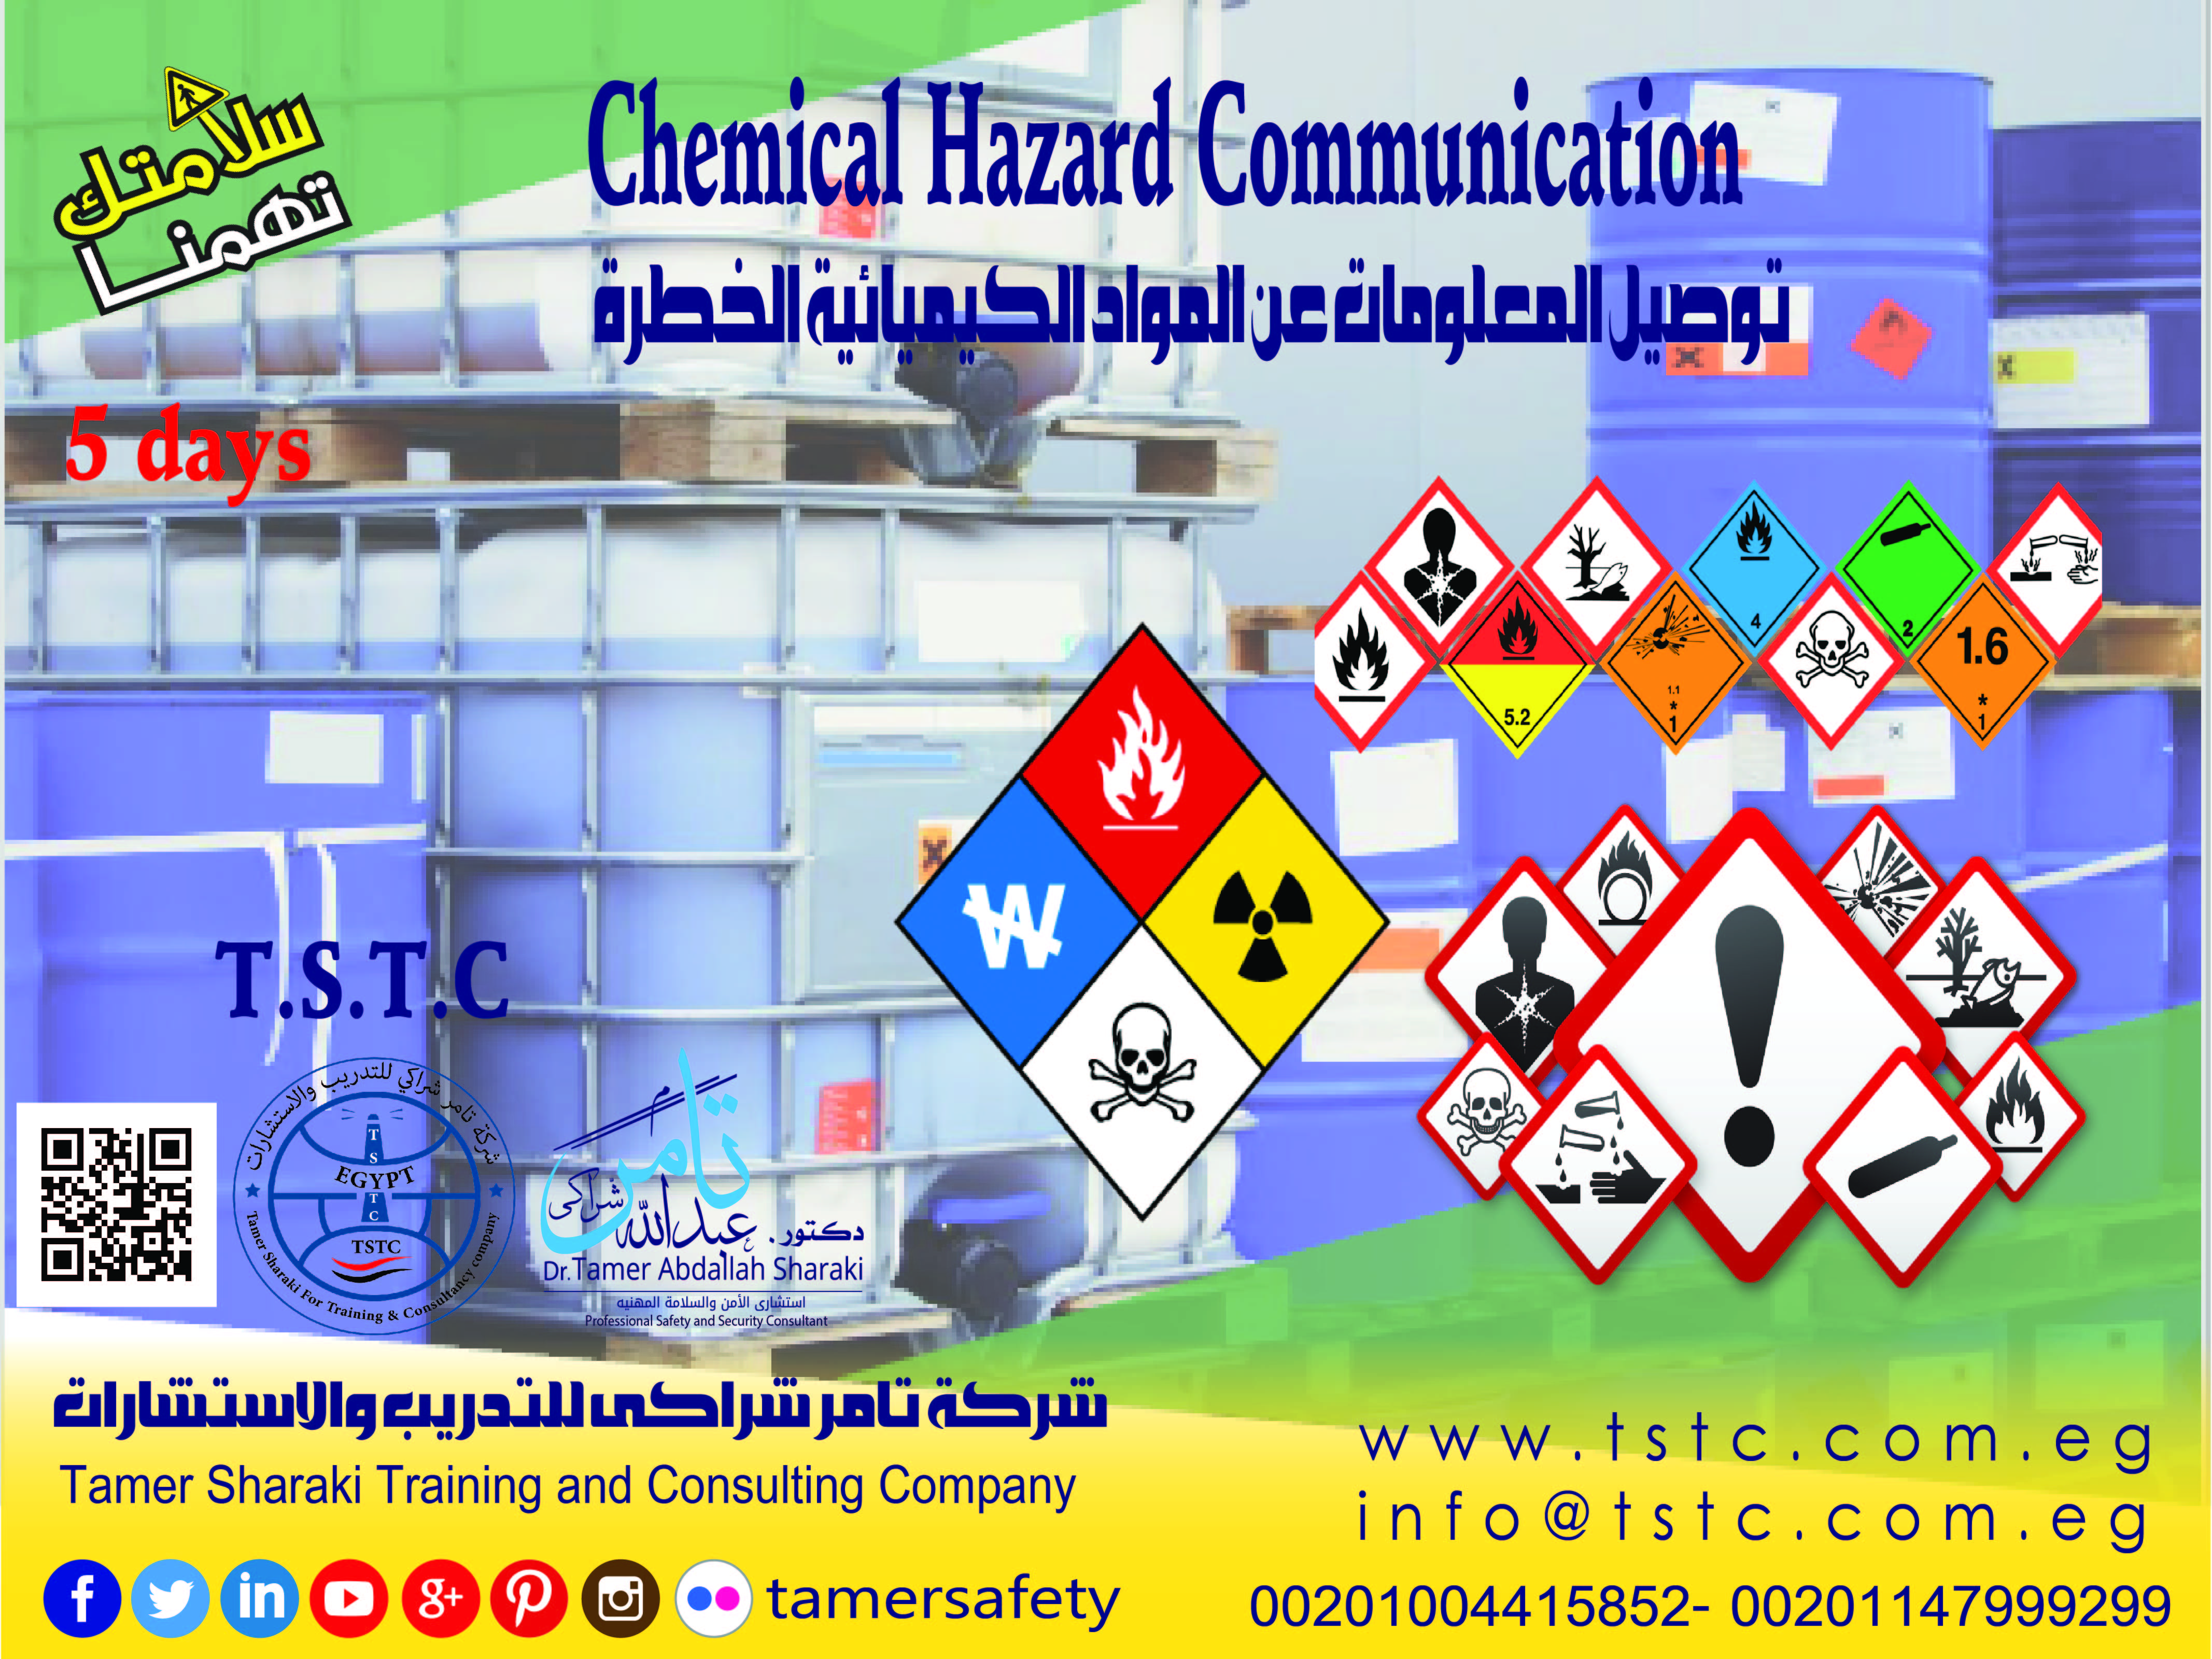 توصيل المعلومات عن المواد الكيميائية الخطرة  Chemical Hazard Communication